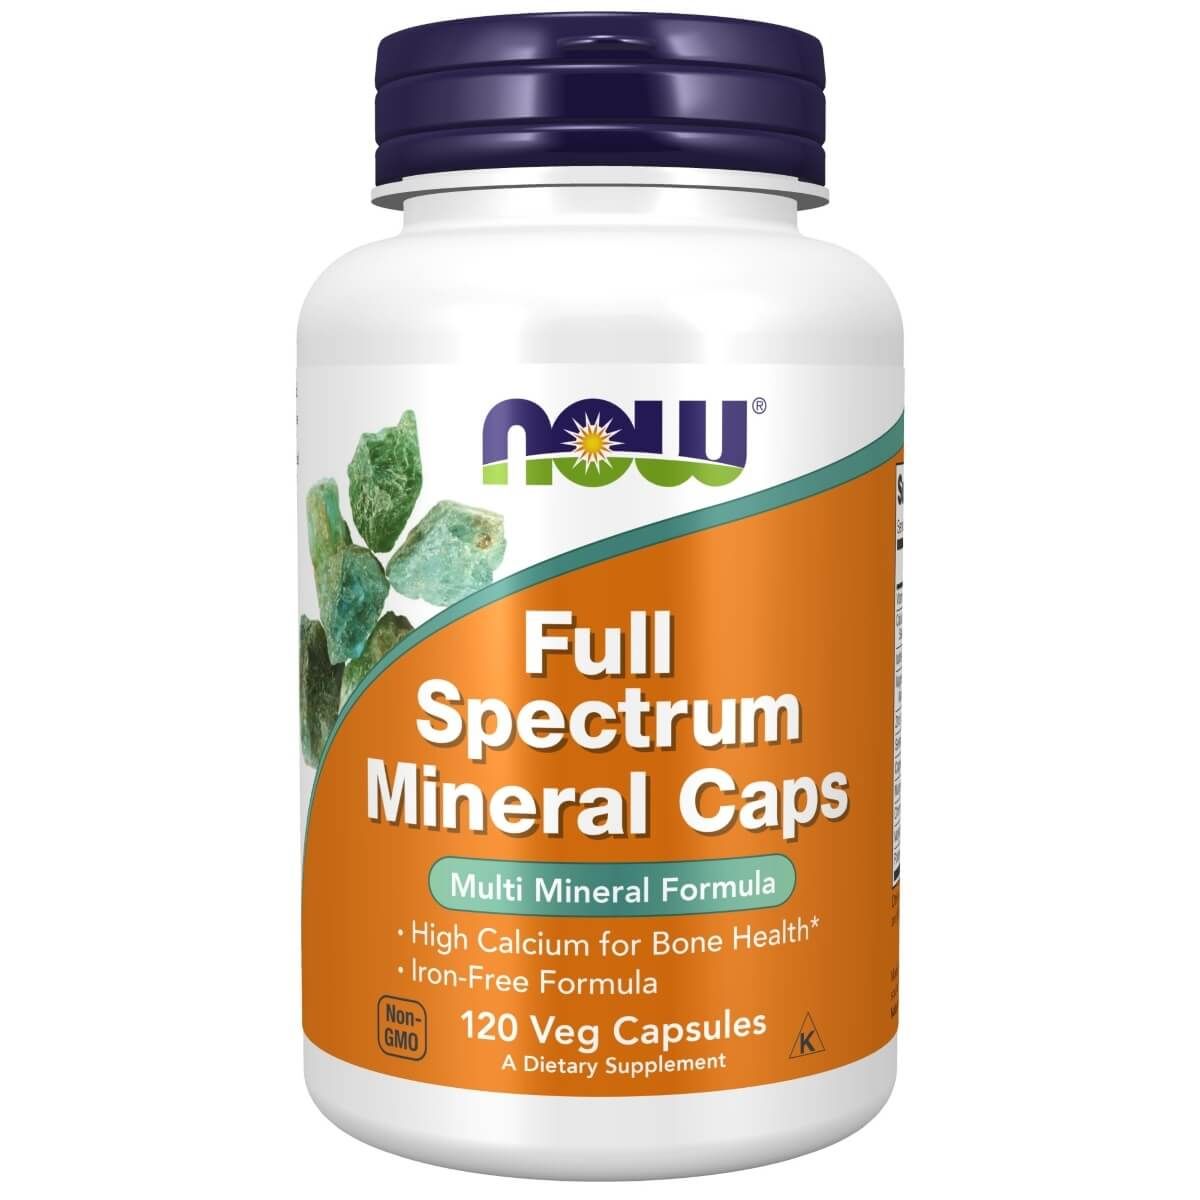 Photos - Vitamins & Minerals Now Foods Full Spectrum Mineral Caps 120 Veg Capsules PBW-P6808 